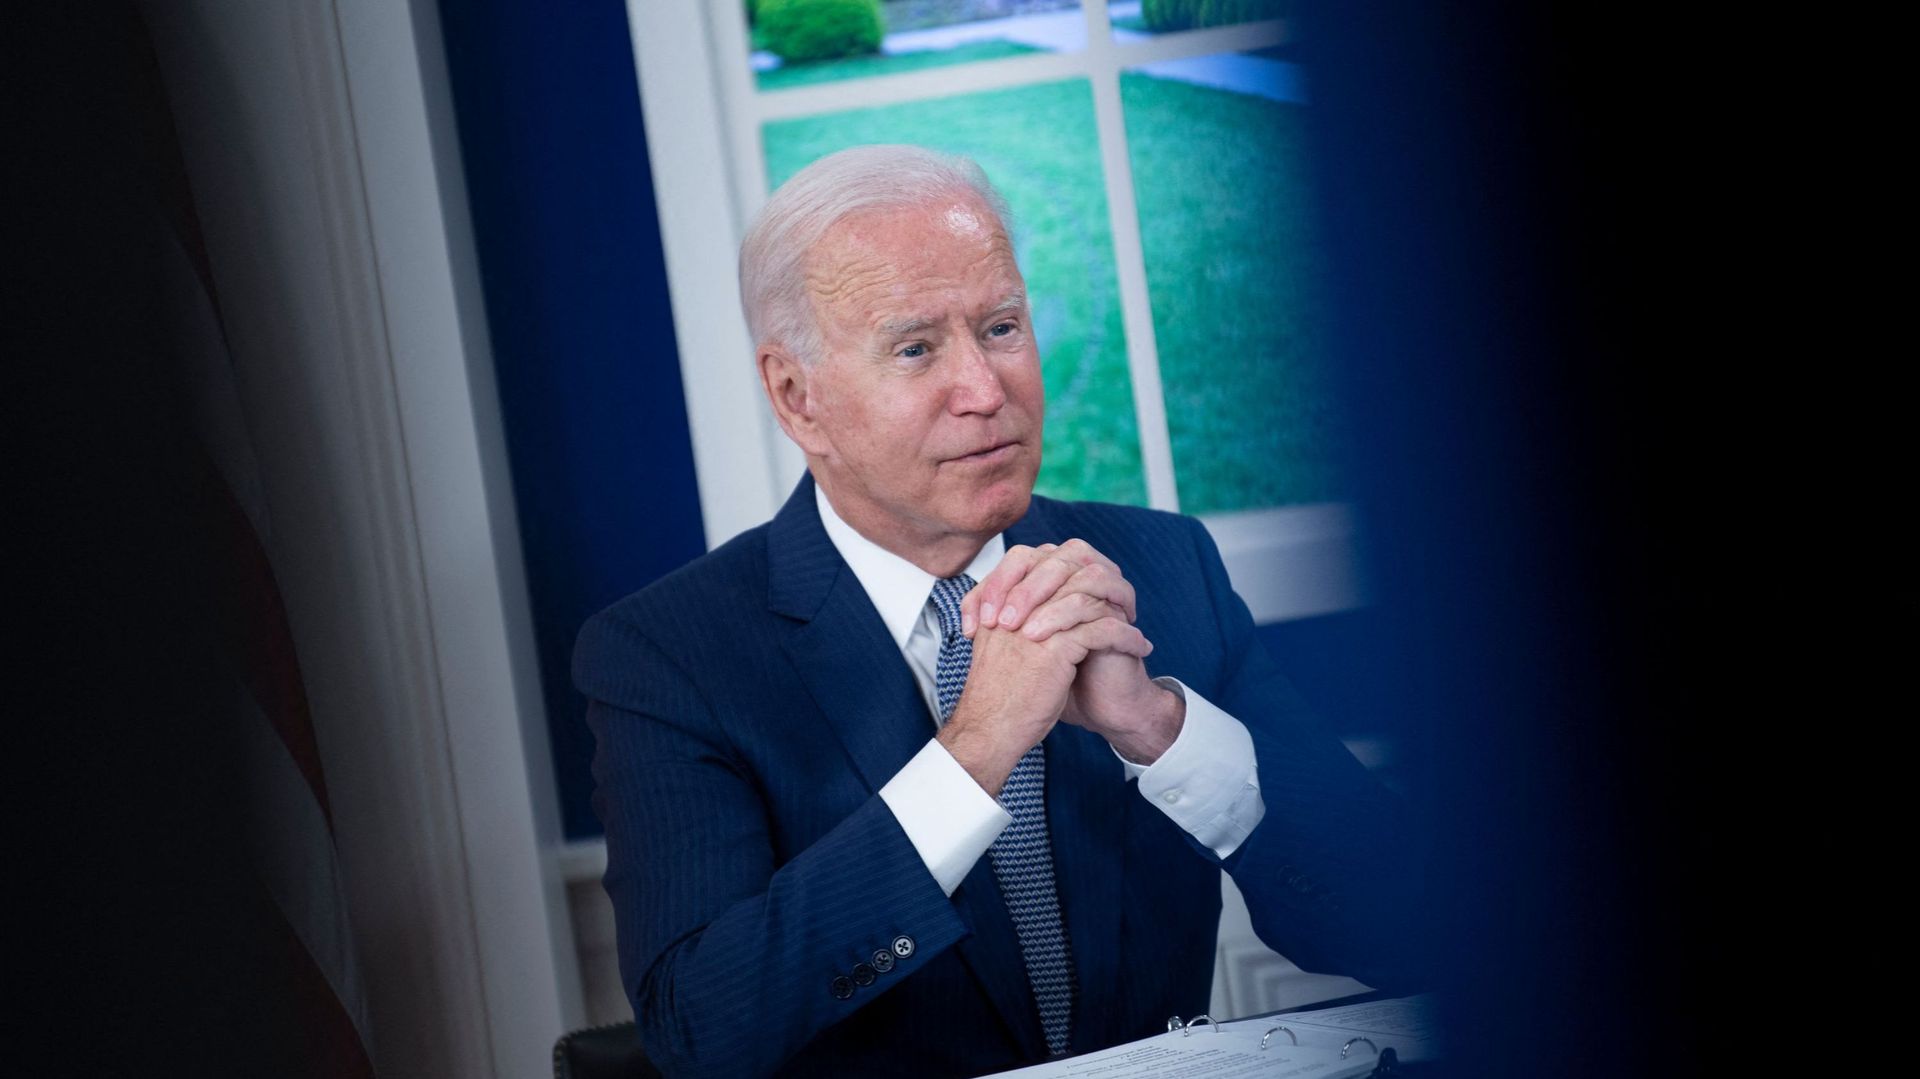 Crise des sous-marins : Biden juge nécessaire une défense européenne "plus forte" en complément de l’Otan